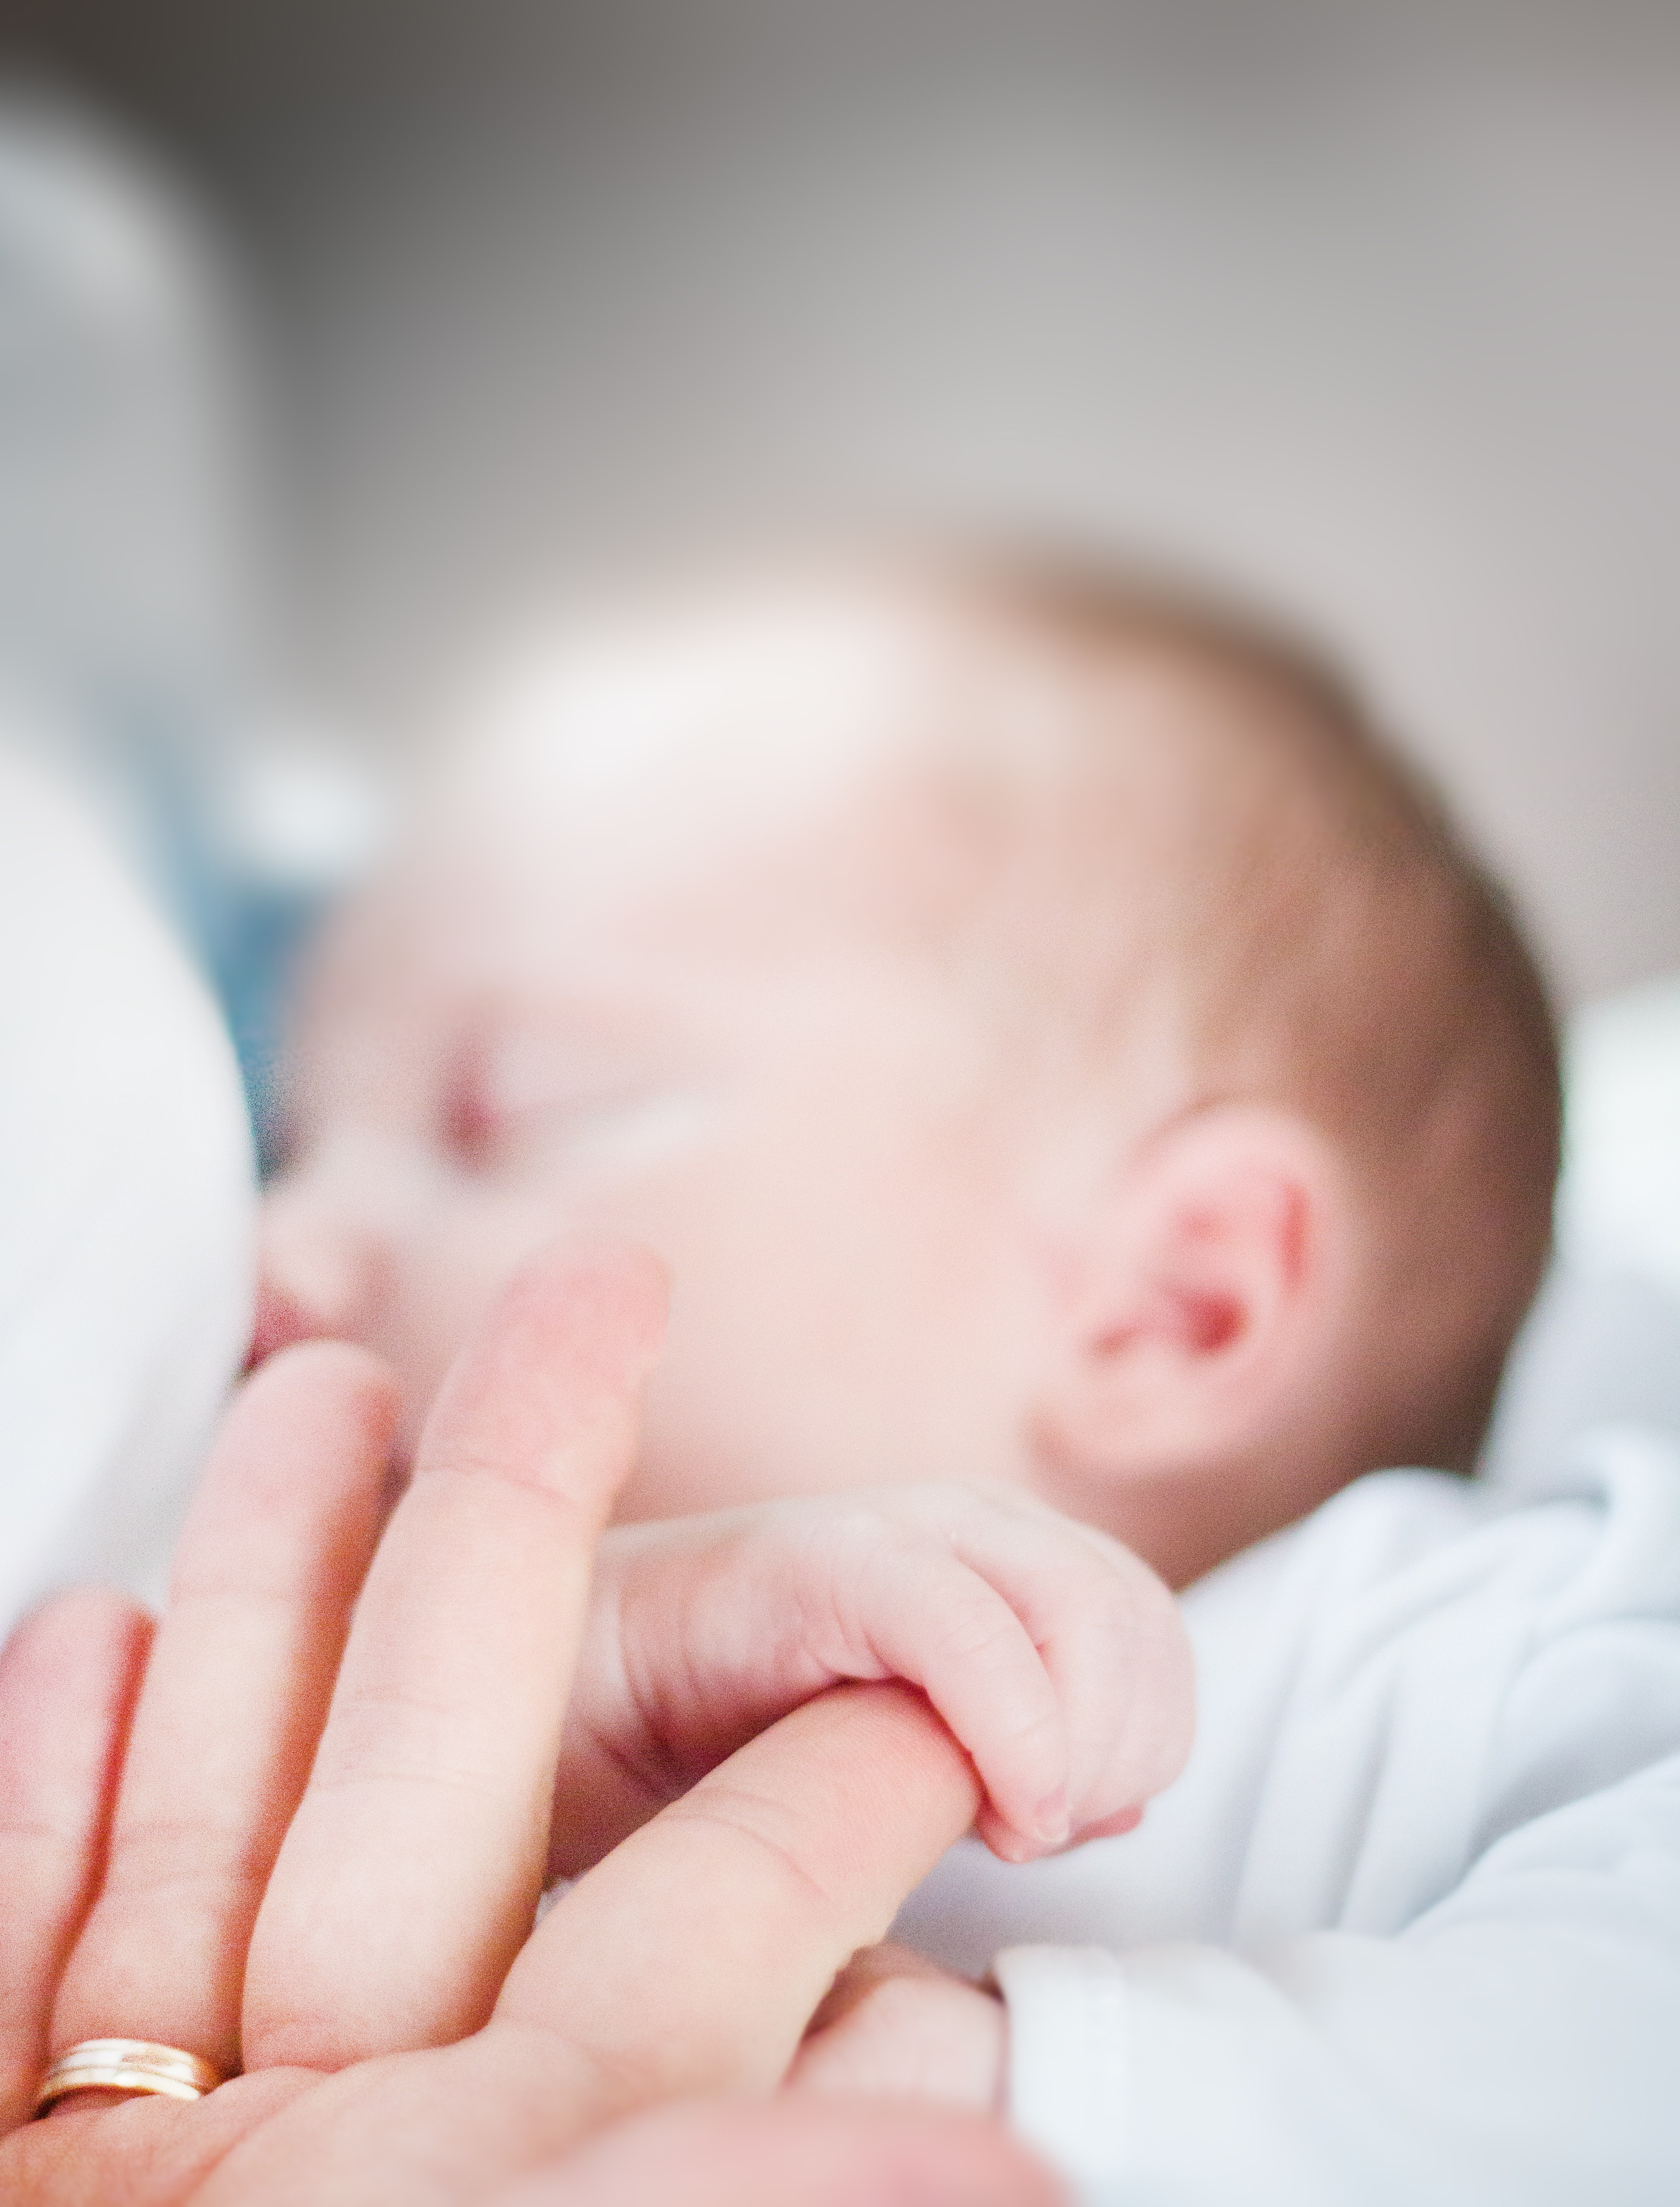 Tilt-shift lens photo of infant's hand holding index finger of adult